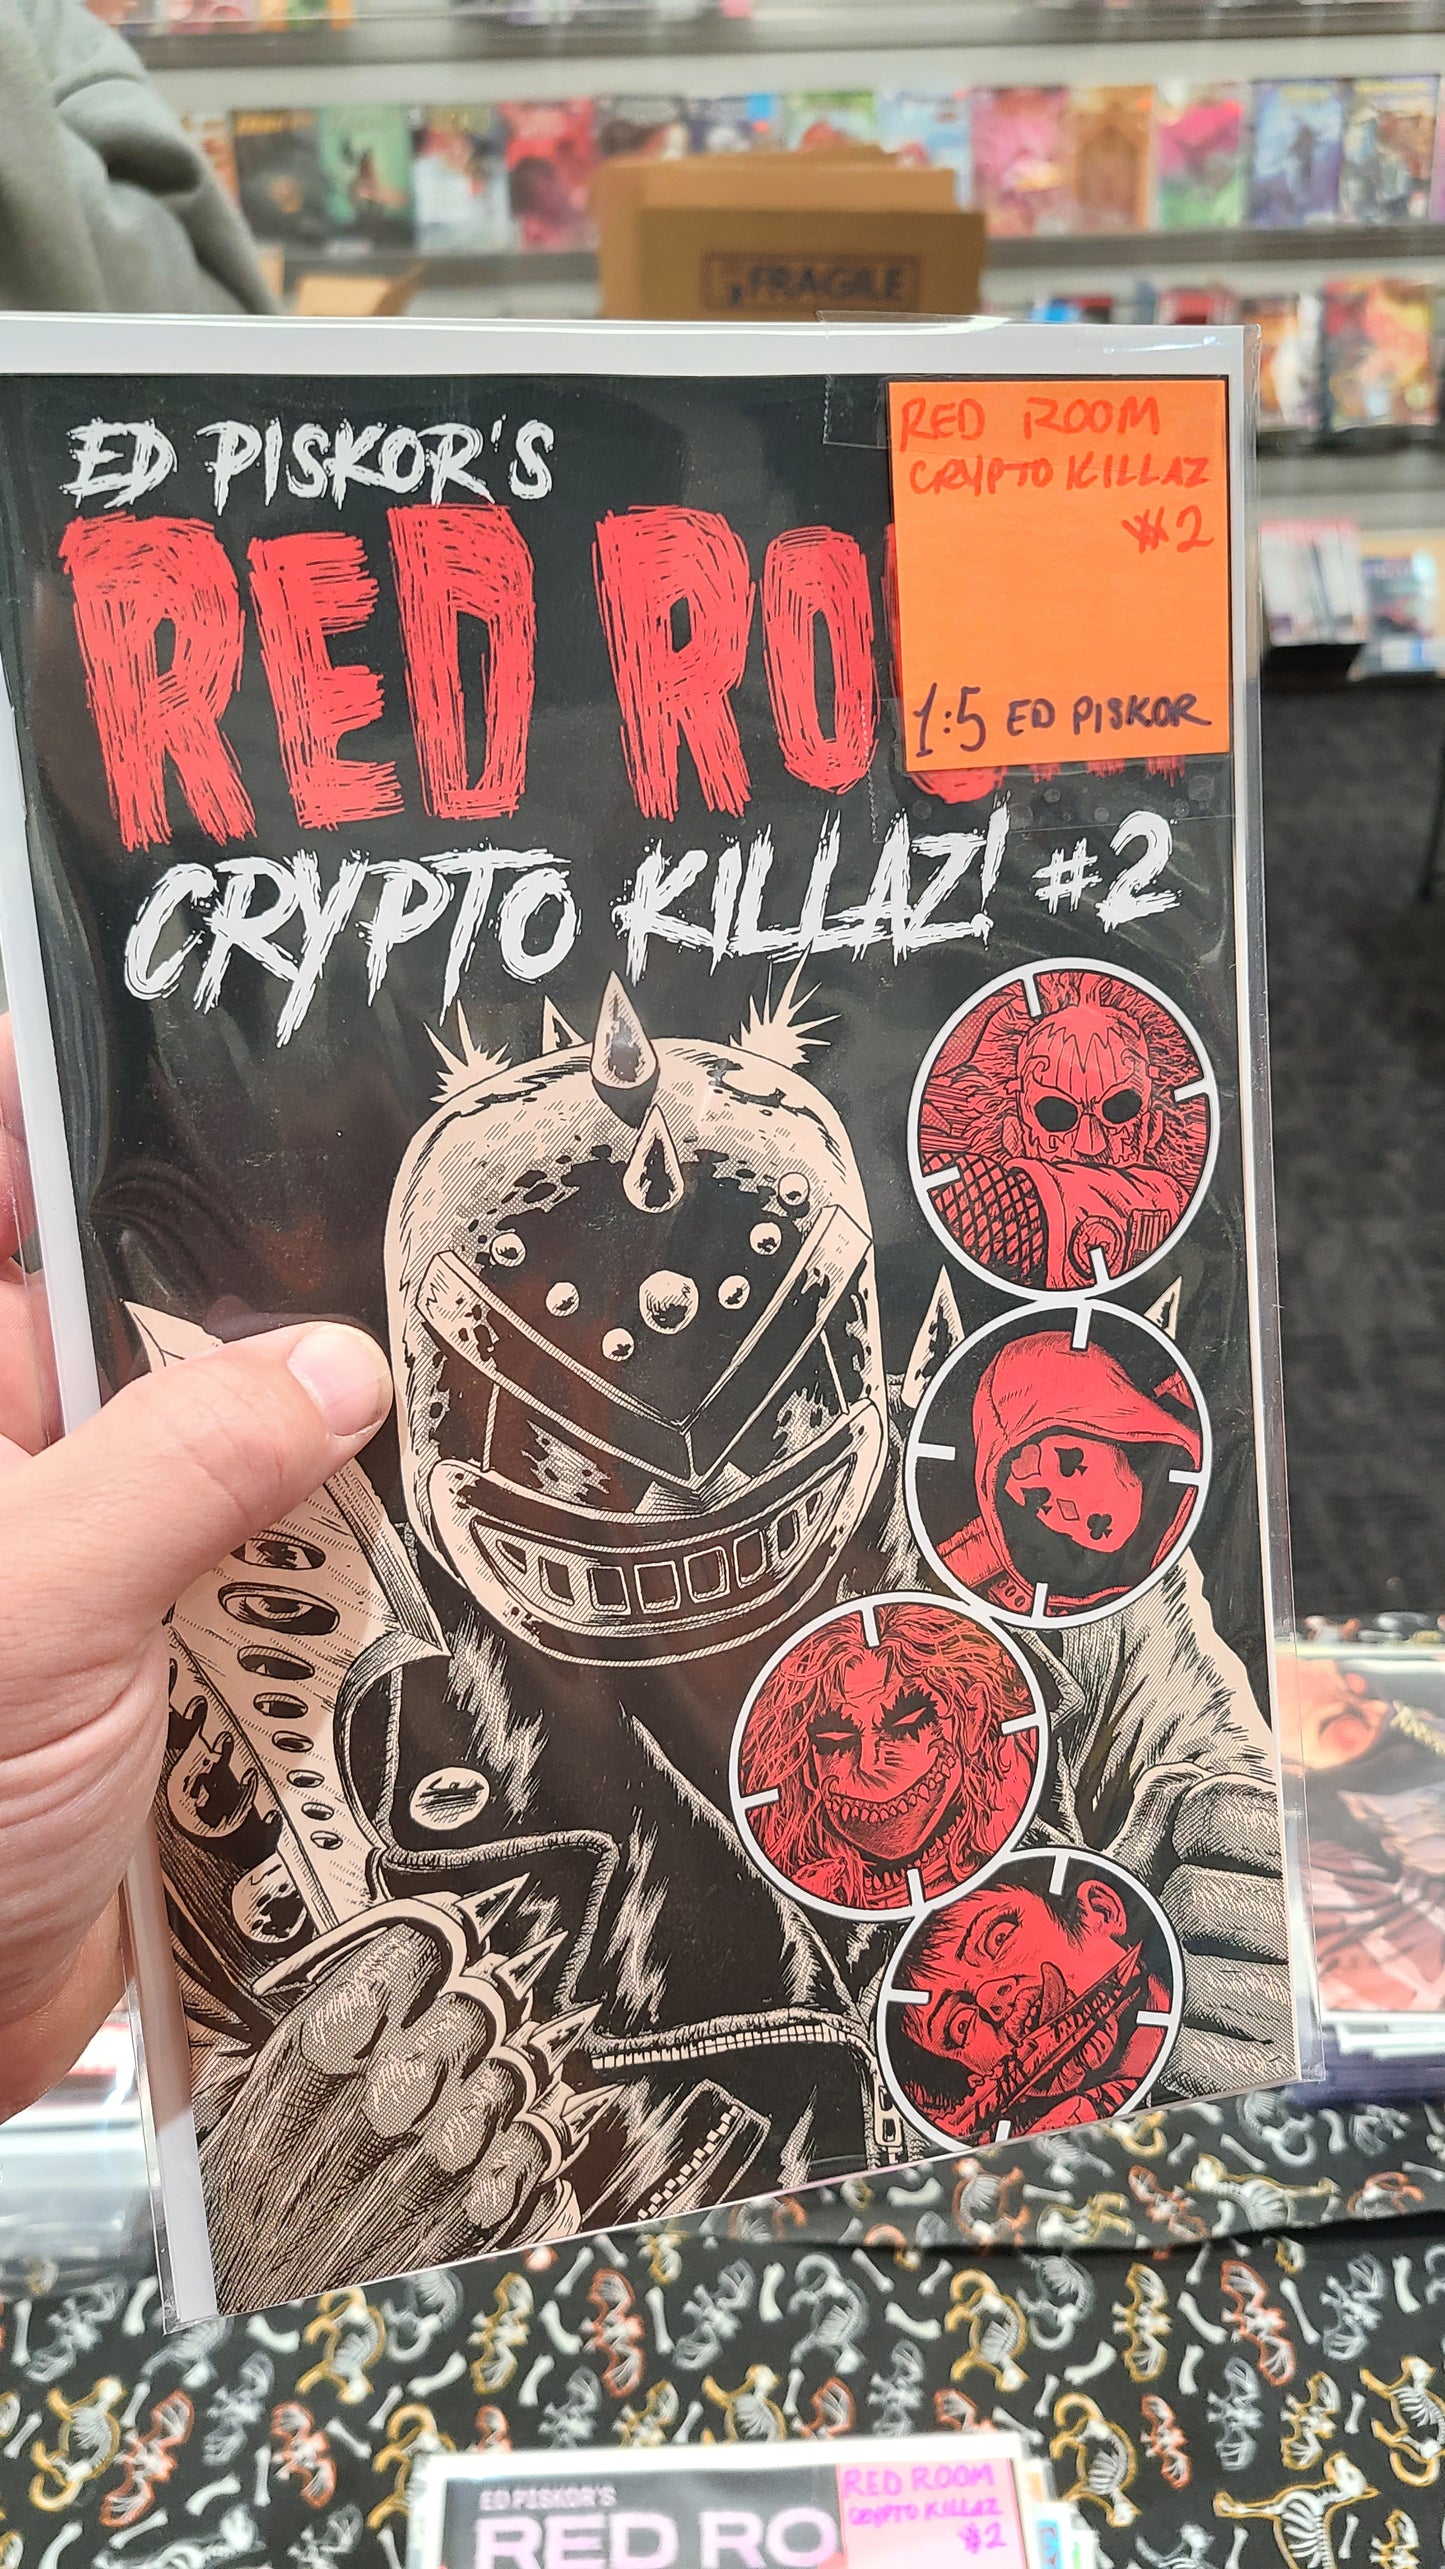 RED ROOM: CRYPTO KILLAZ #2 1:5 BY ED PISKOR